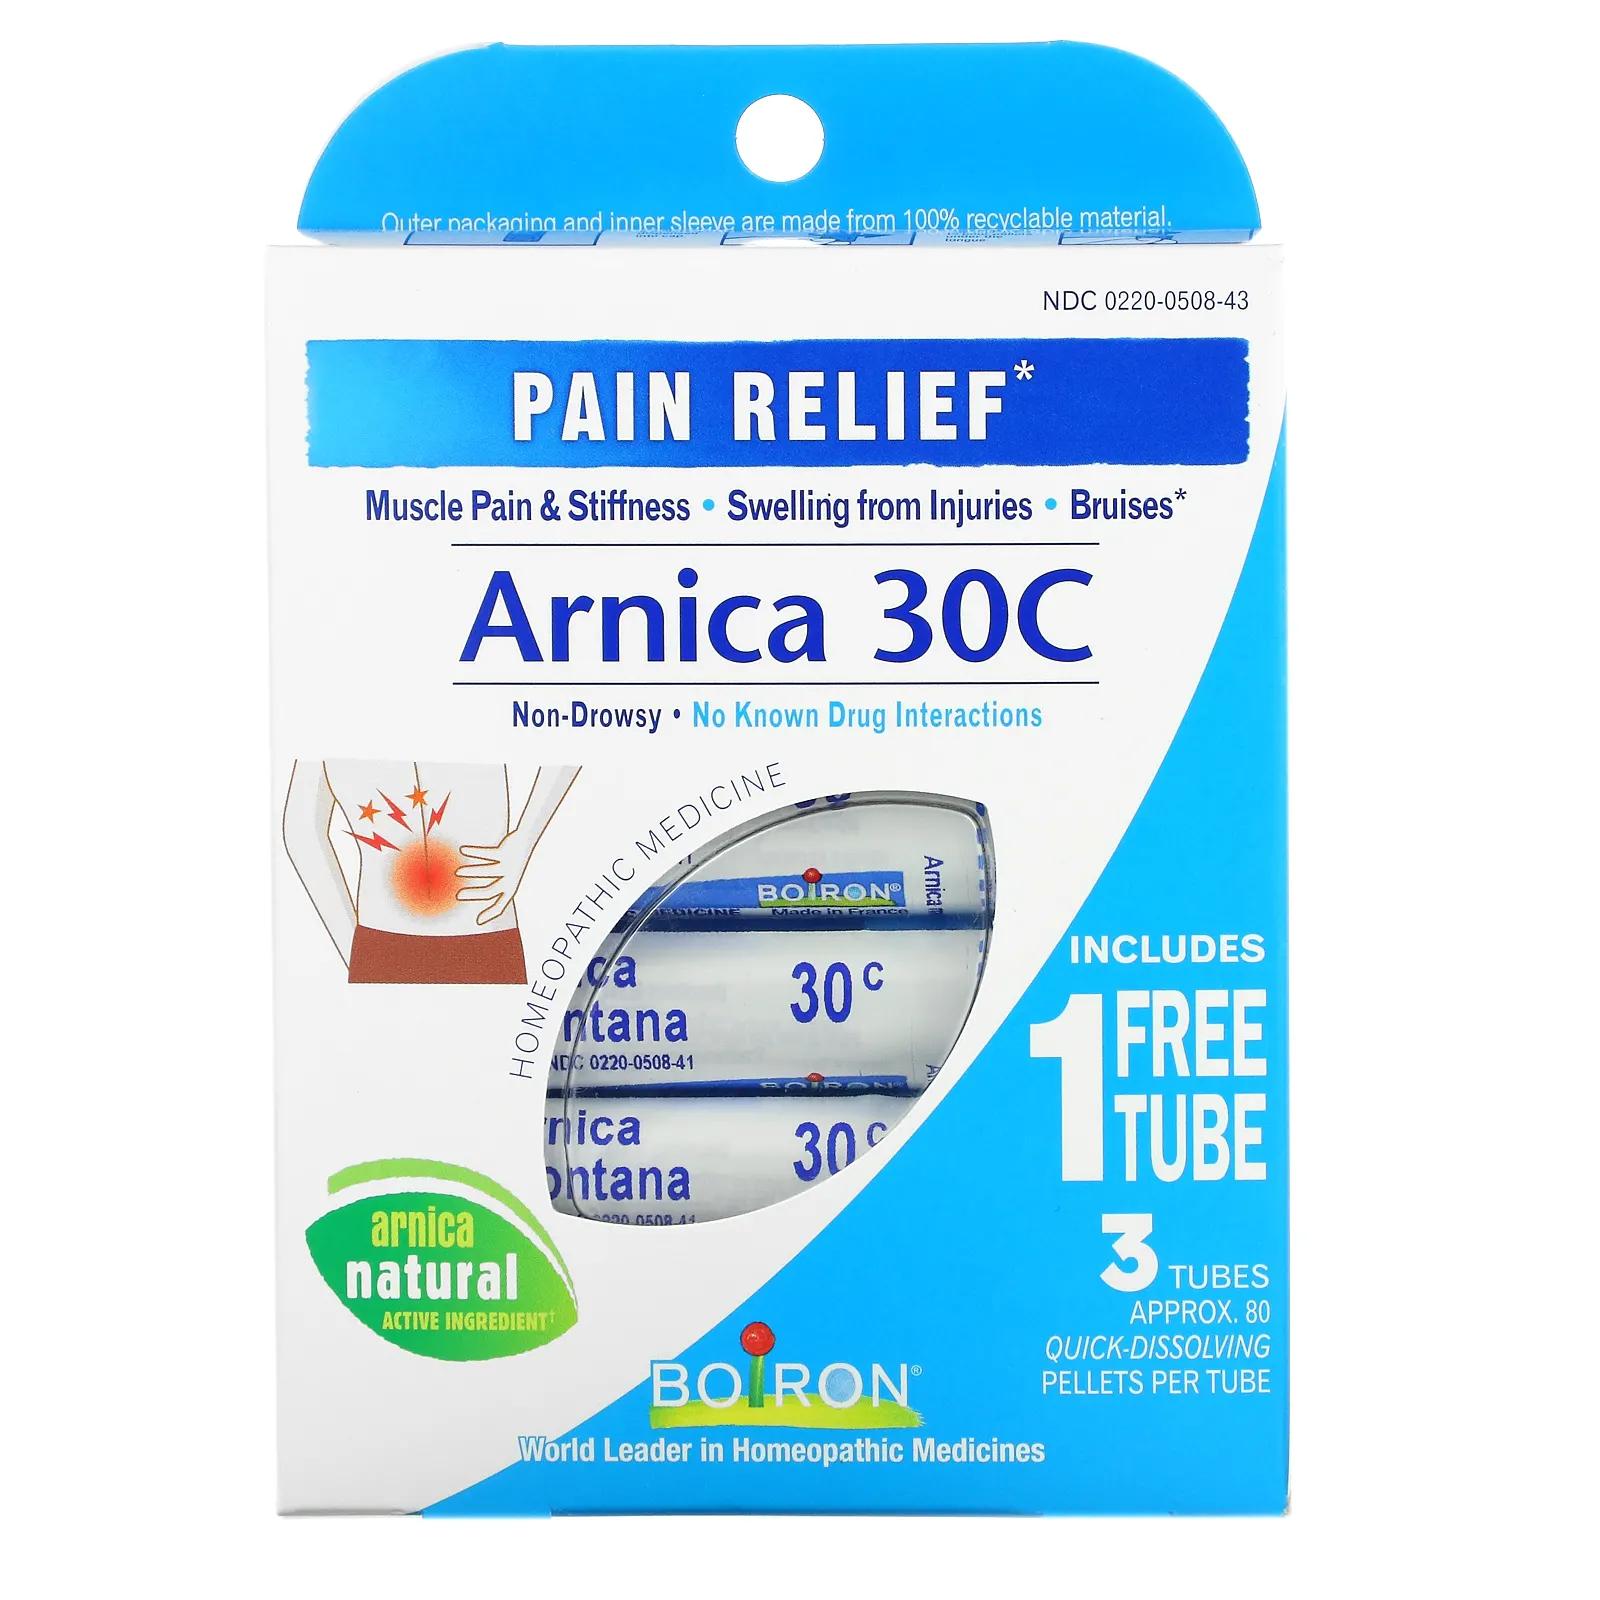 цена Boiron Single Remedies Arnica 30C обезболивающее 3 тюбика 80 пеллет в каждом